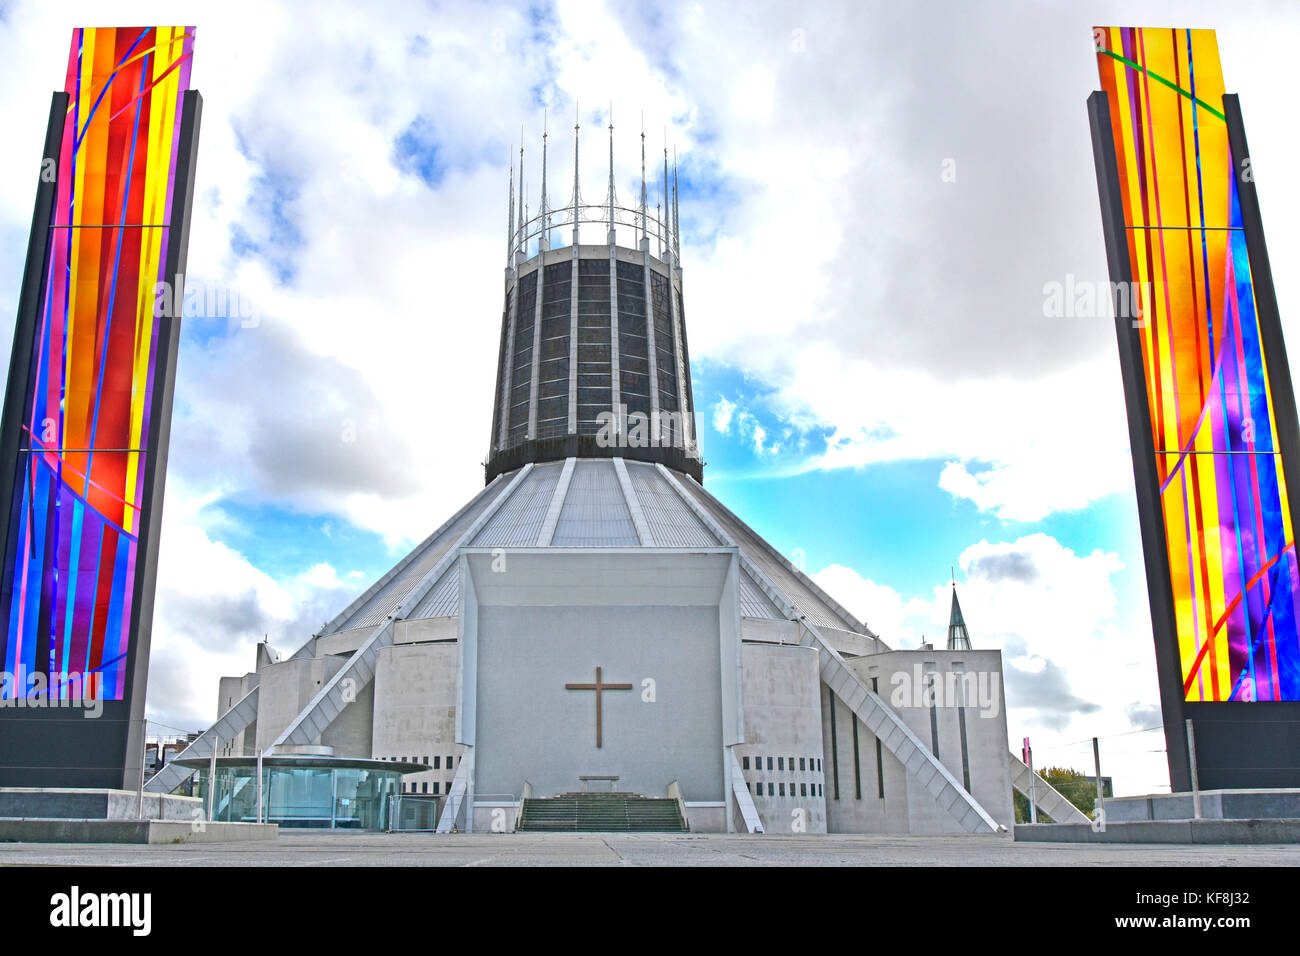 Cattedrale metropolitana di Liverpool architettura moderna e design della chiesa cattolica esterna fiancheggiata da pannelli di vetro colorato Merseyside Inghilterra Regno Unito Foto Stock